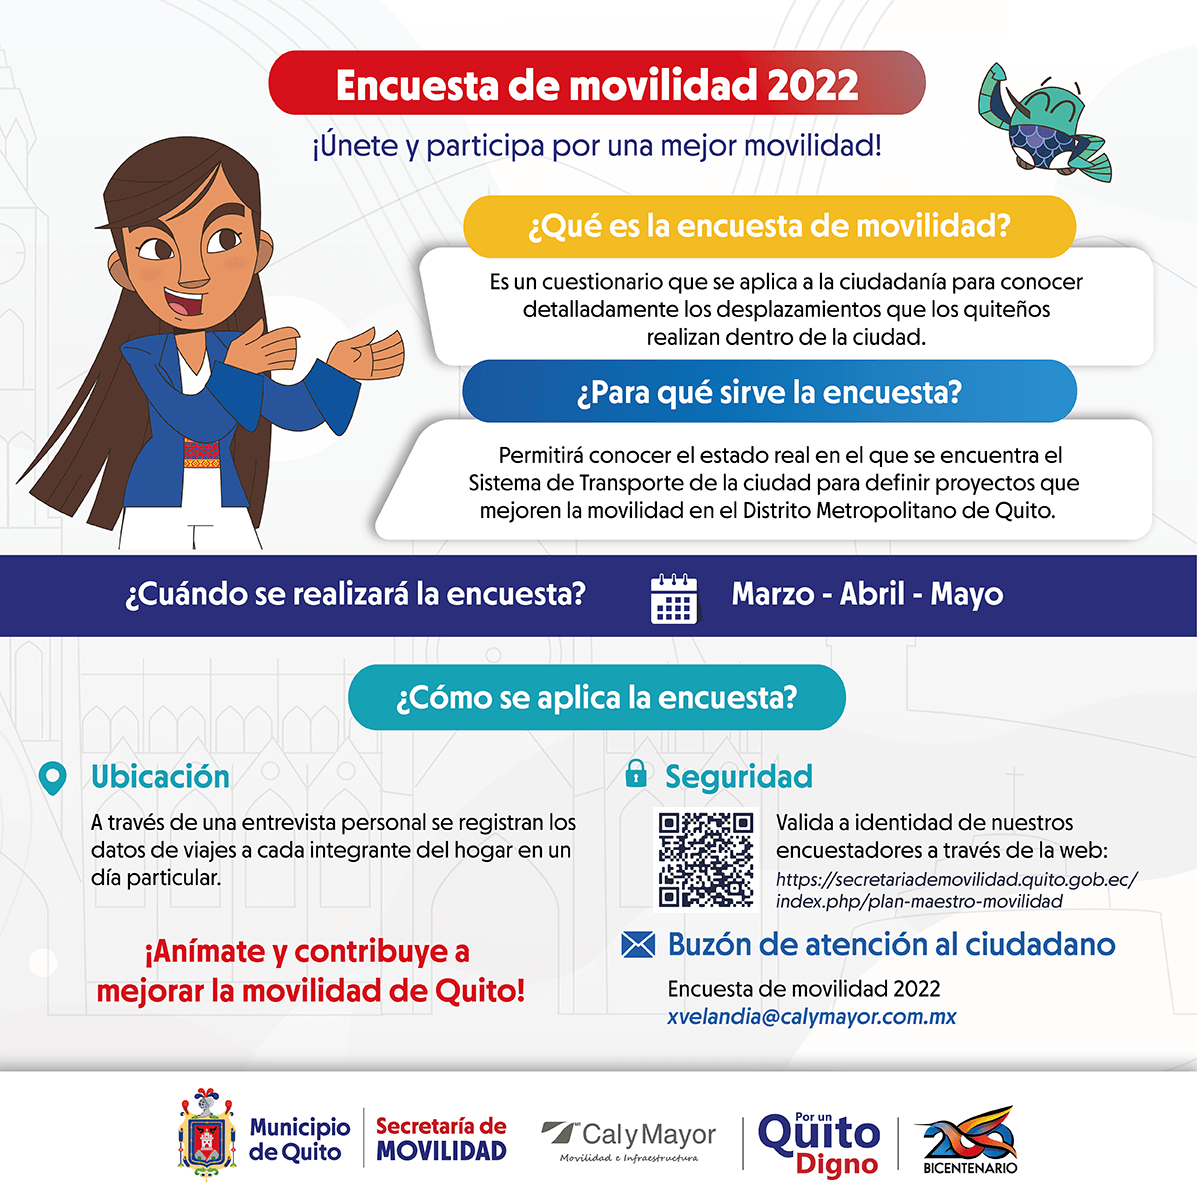 Encuesta de Movilidad, Quito 2022